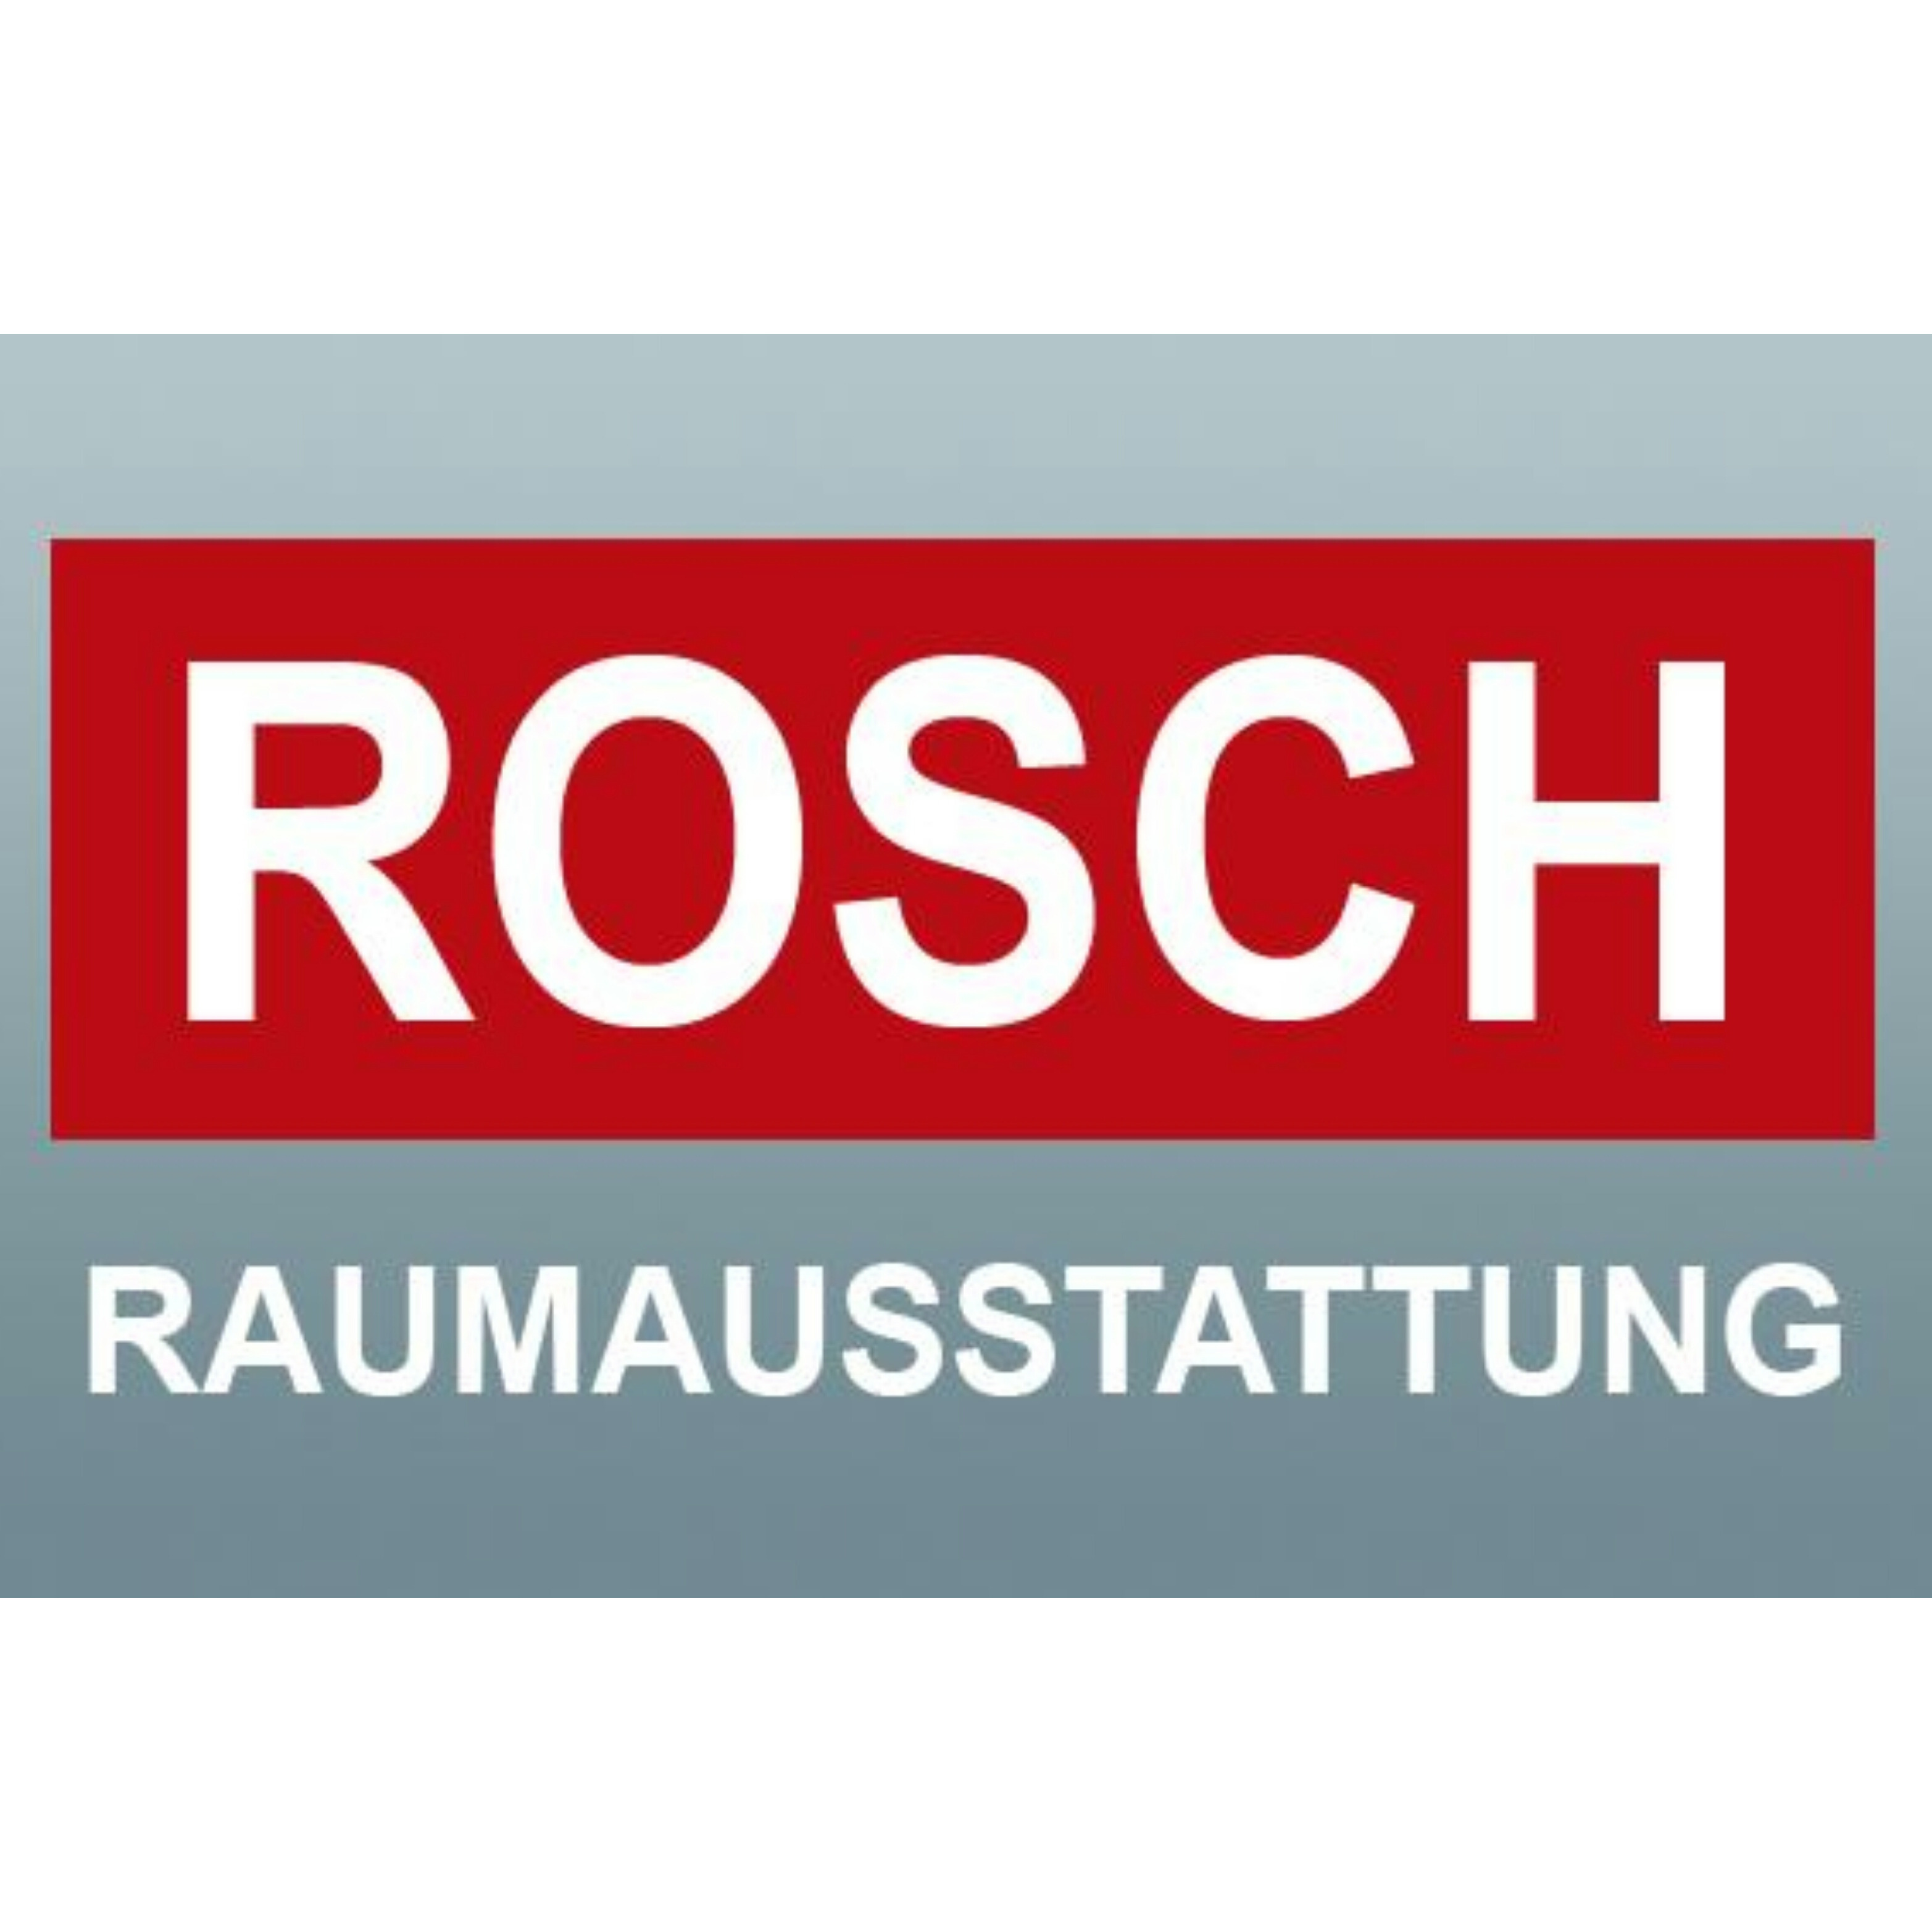 ROSCH Raumausstattung e.K. in Neu Isenburg - Logo